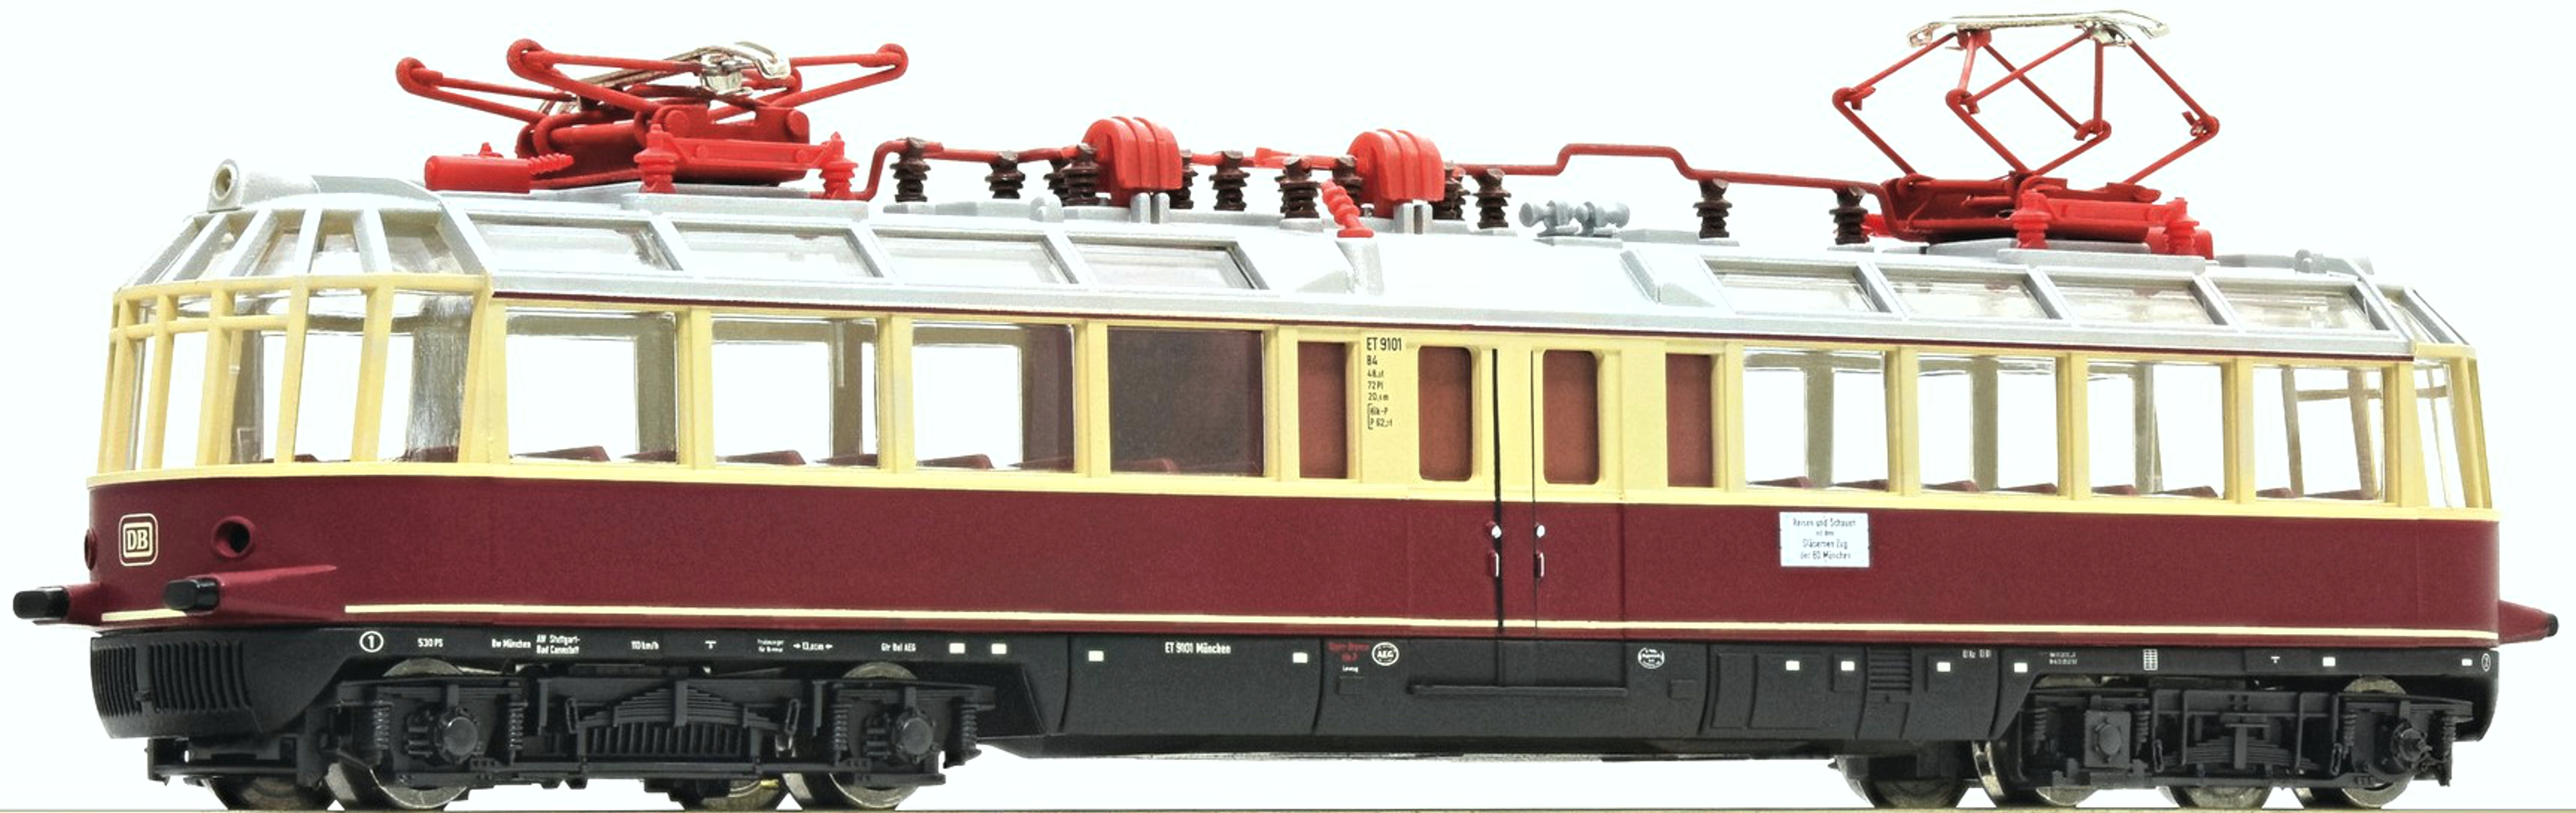 Fleischmann 741103 - Triebwagen ET 91 01 'Gläserner Zug', DB, Ep.III